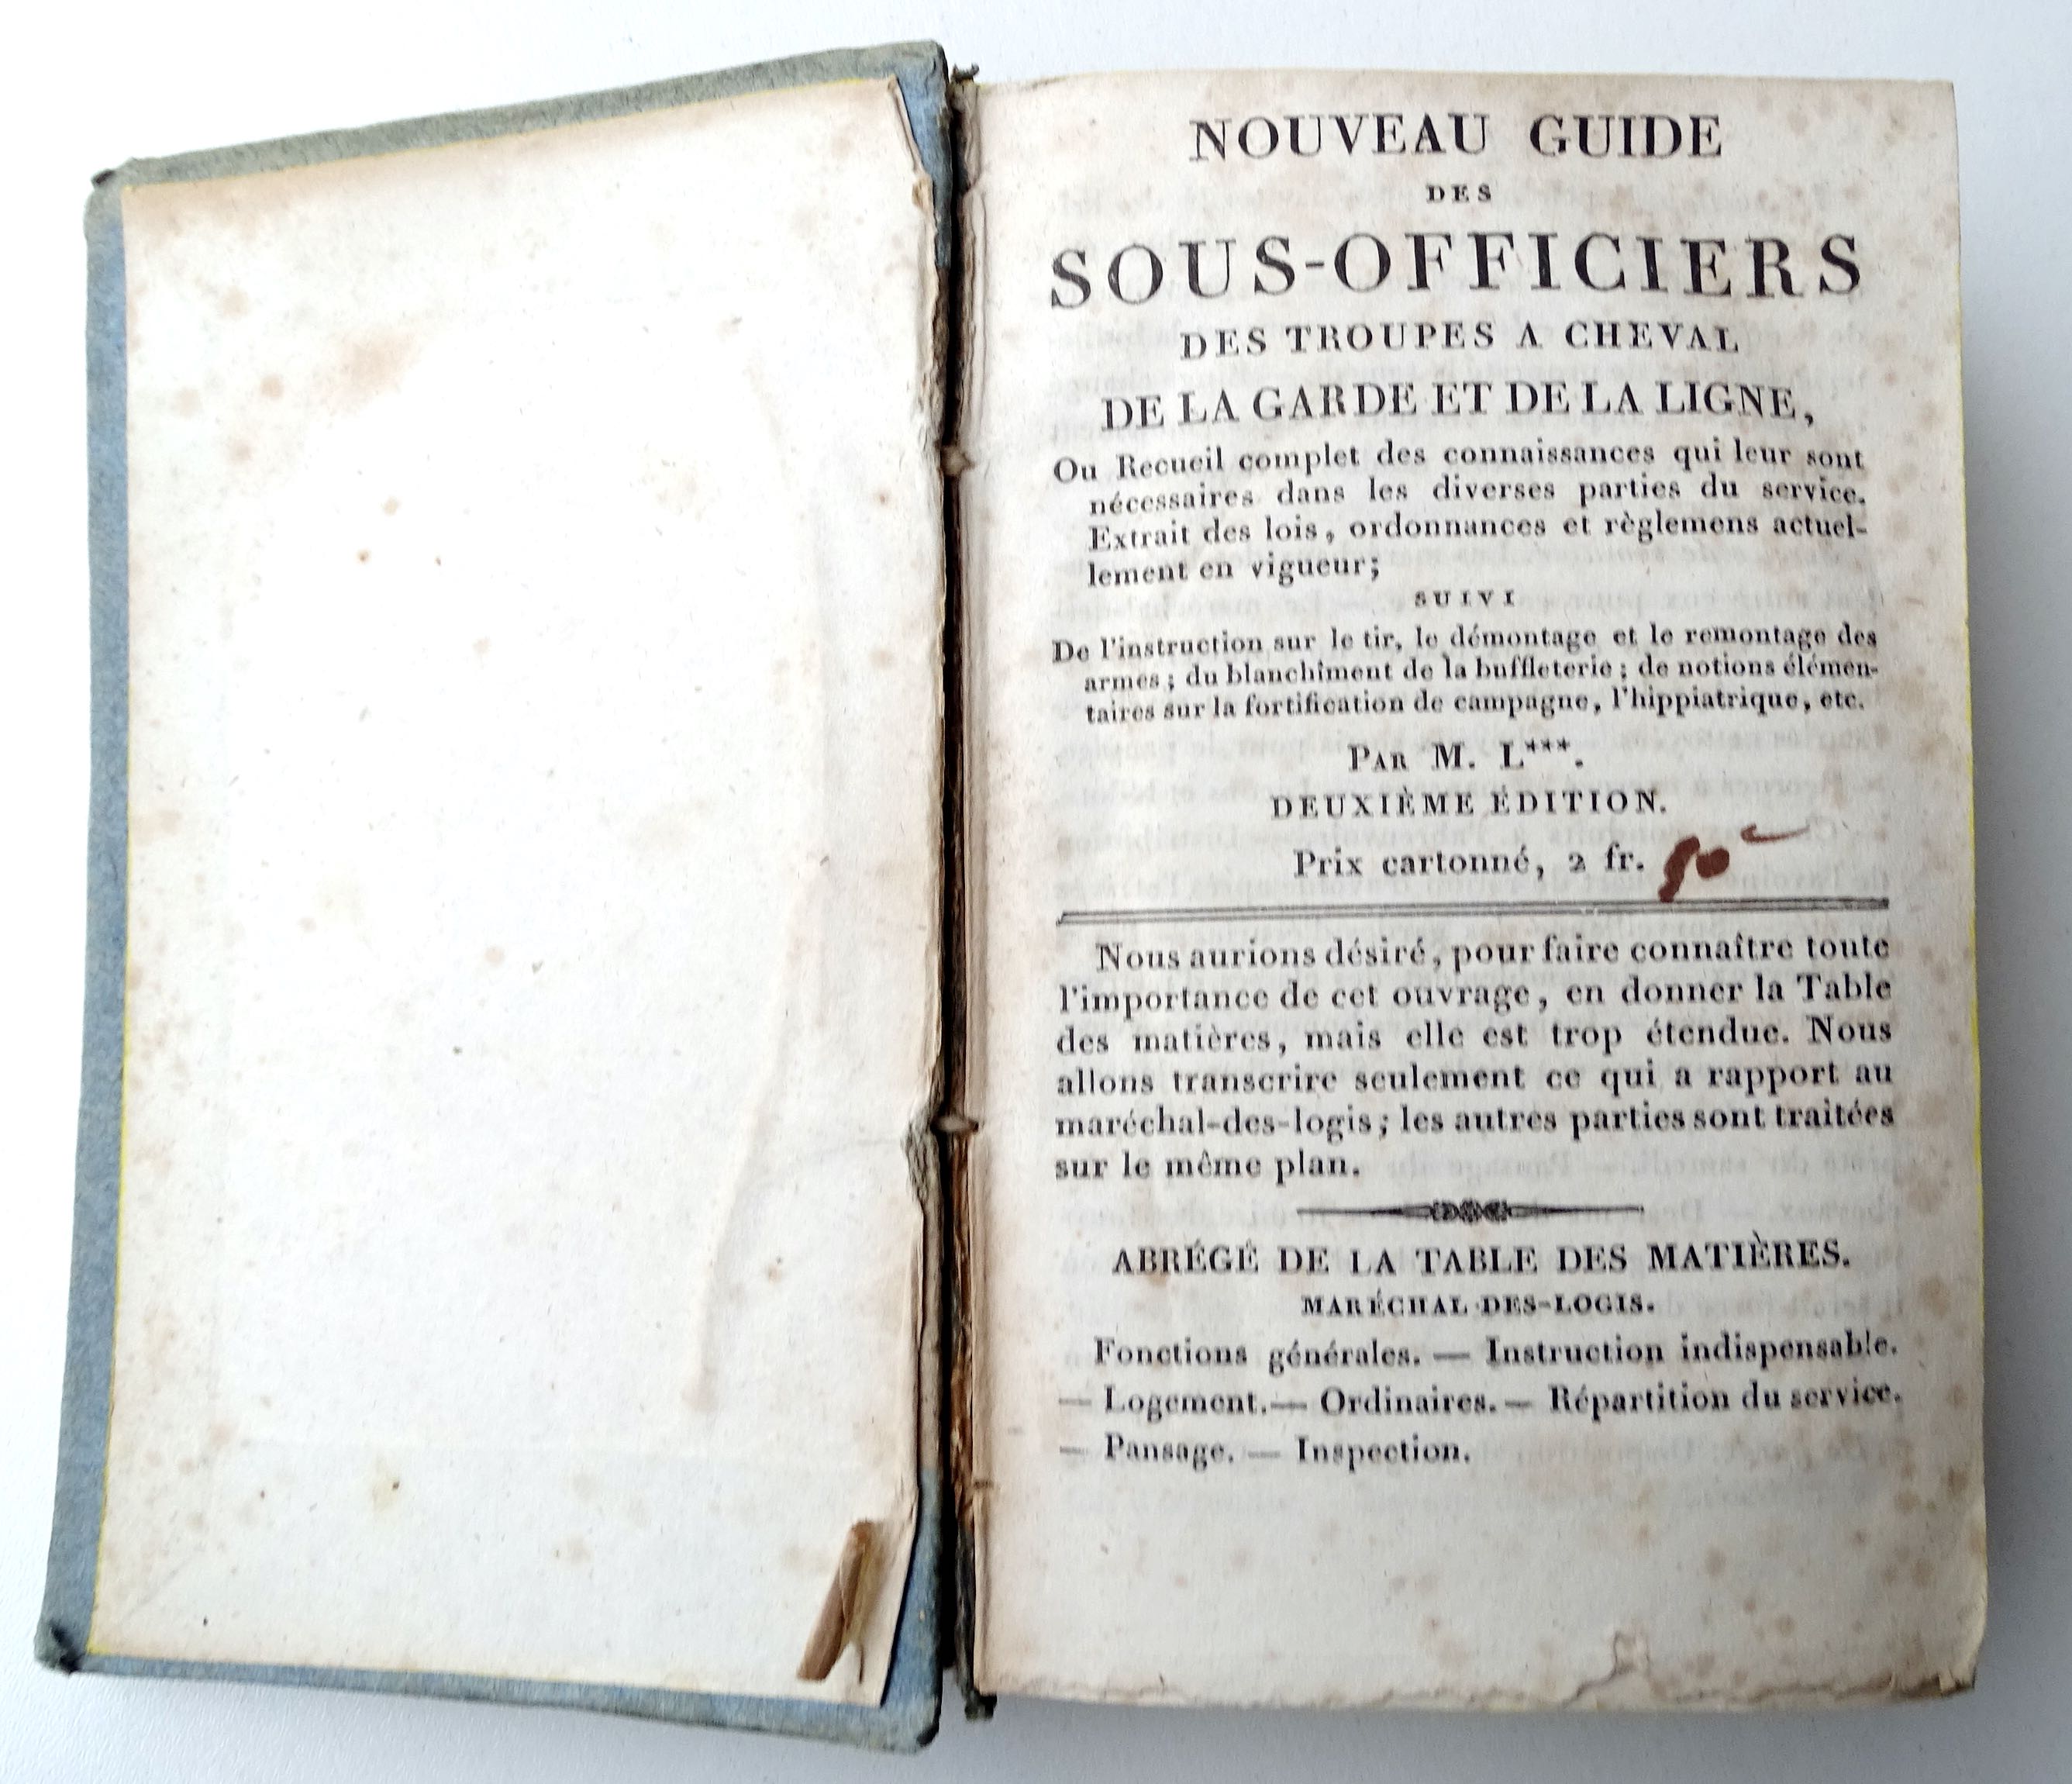 Ordonnance sur l&#039;exercice et les &eacute;volutions de la cavalerie Guide des sous-officiers 1830